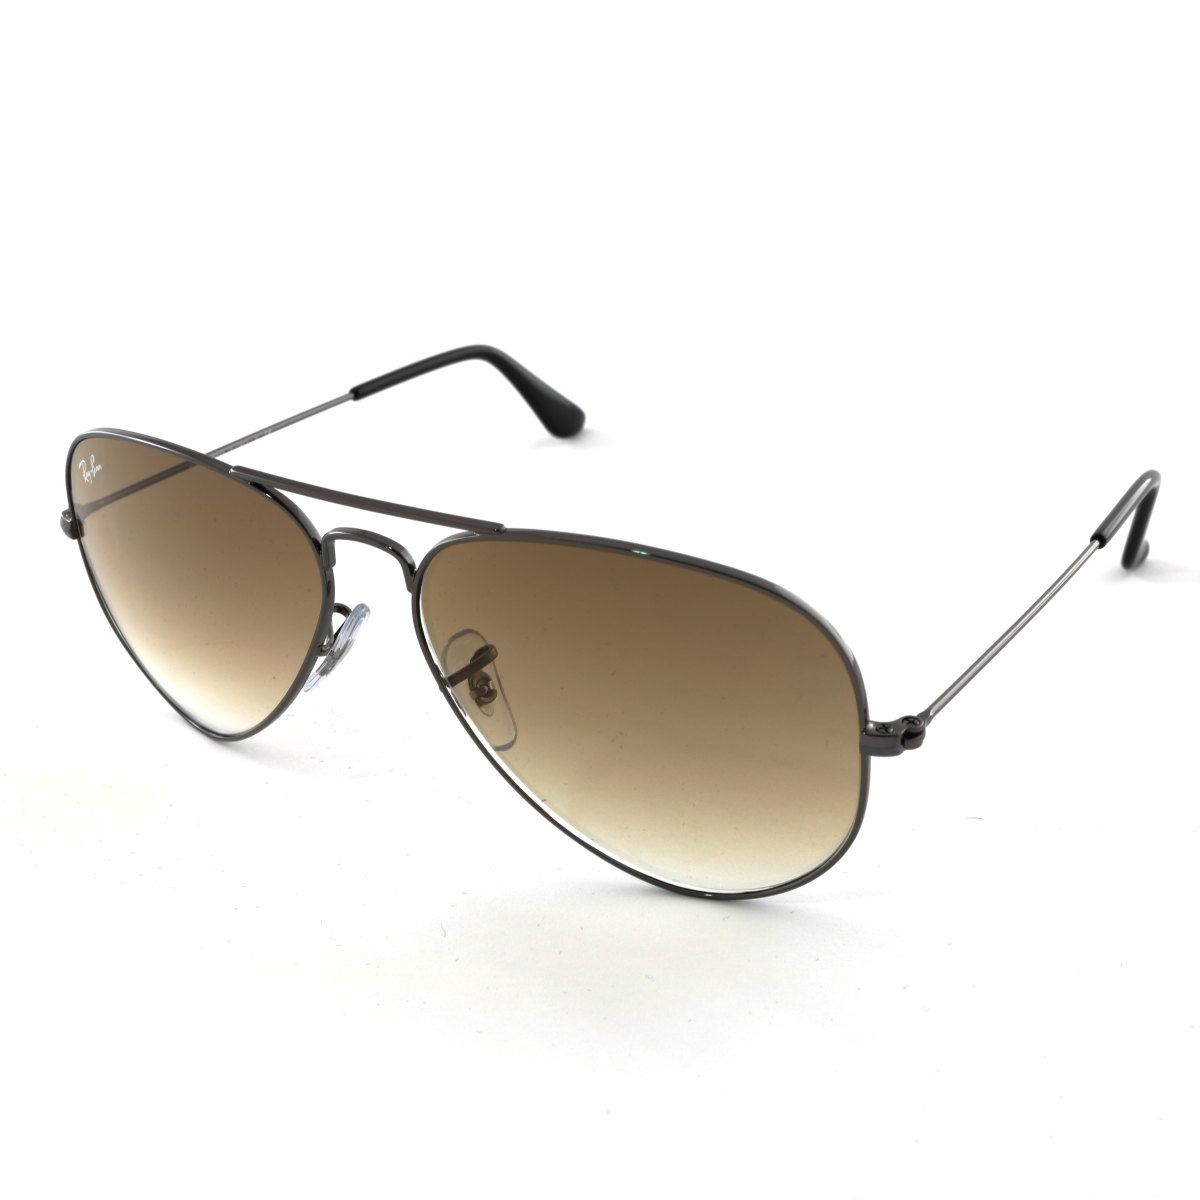 Aviator Sunglasses RB3025 004 51 - size 55